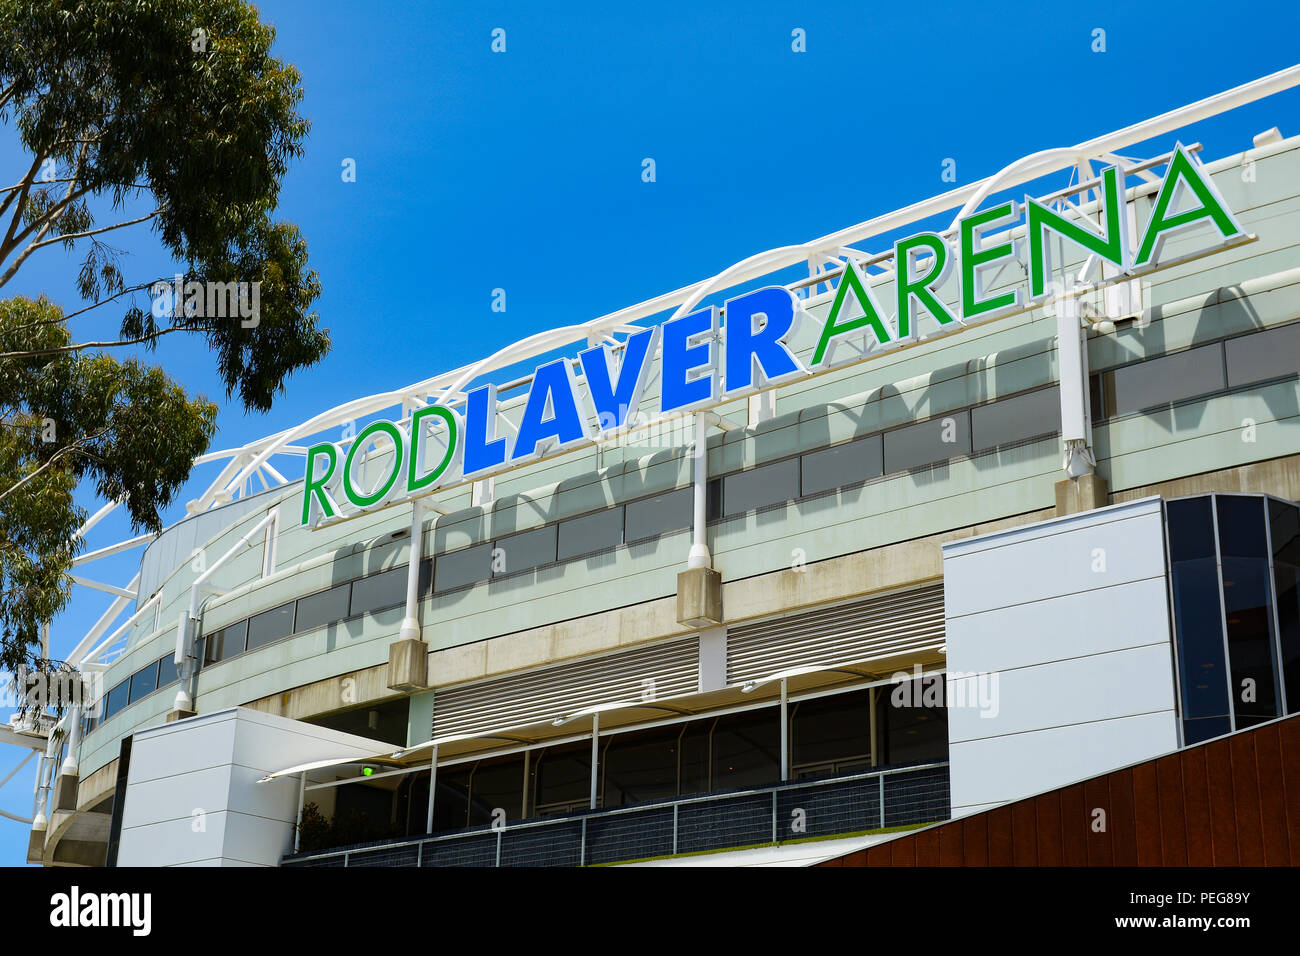 La Rod Laver Arena de Melbourne, Australie Banque D'Images